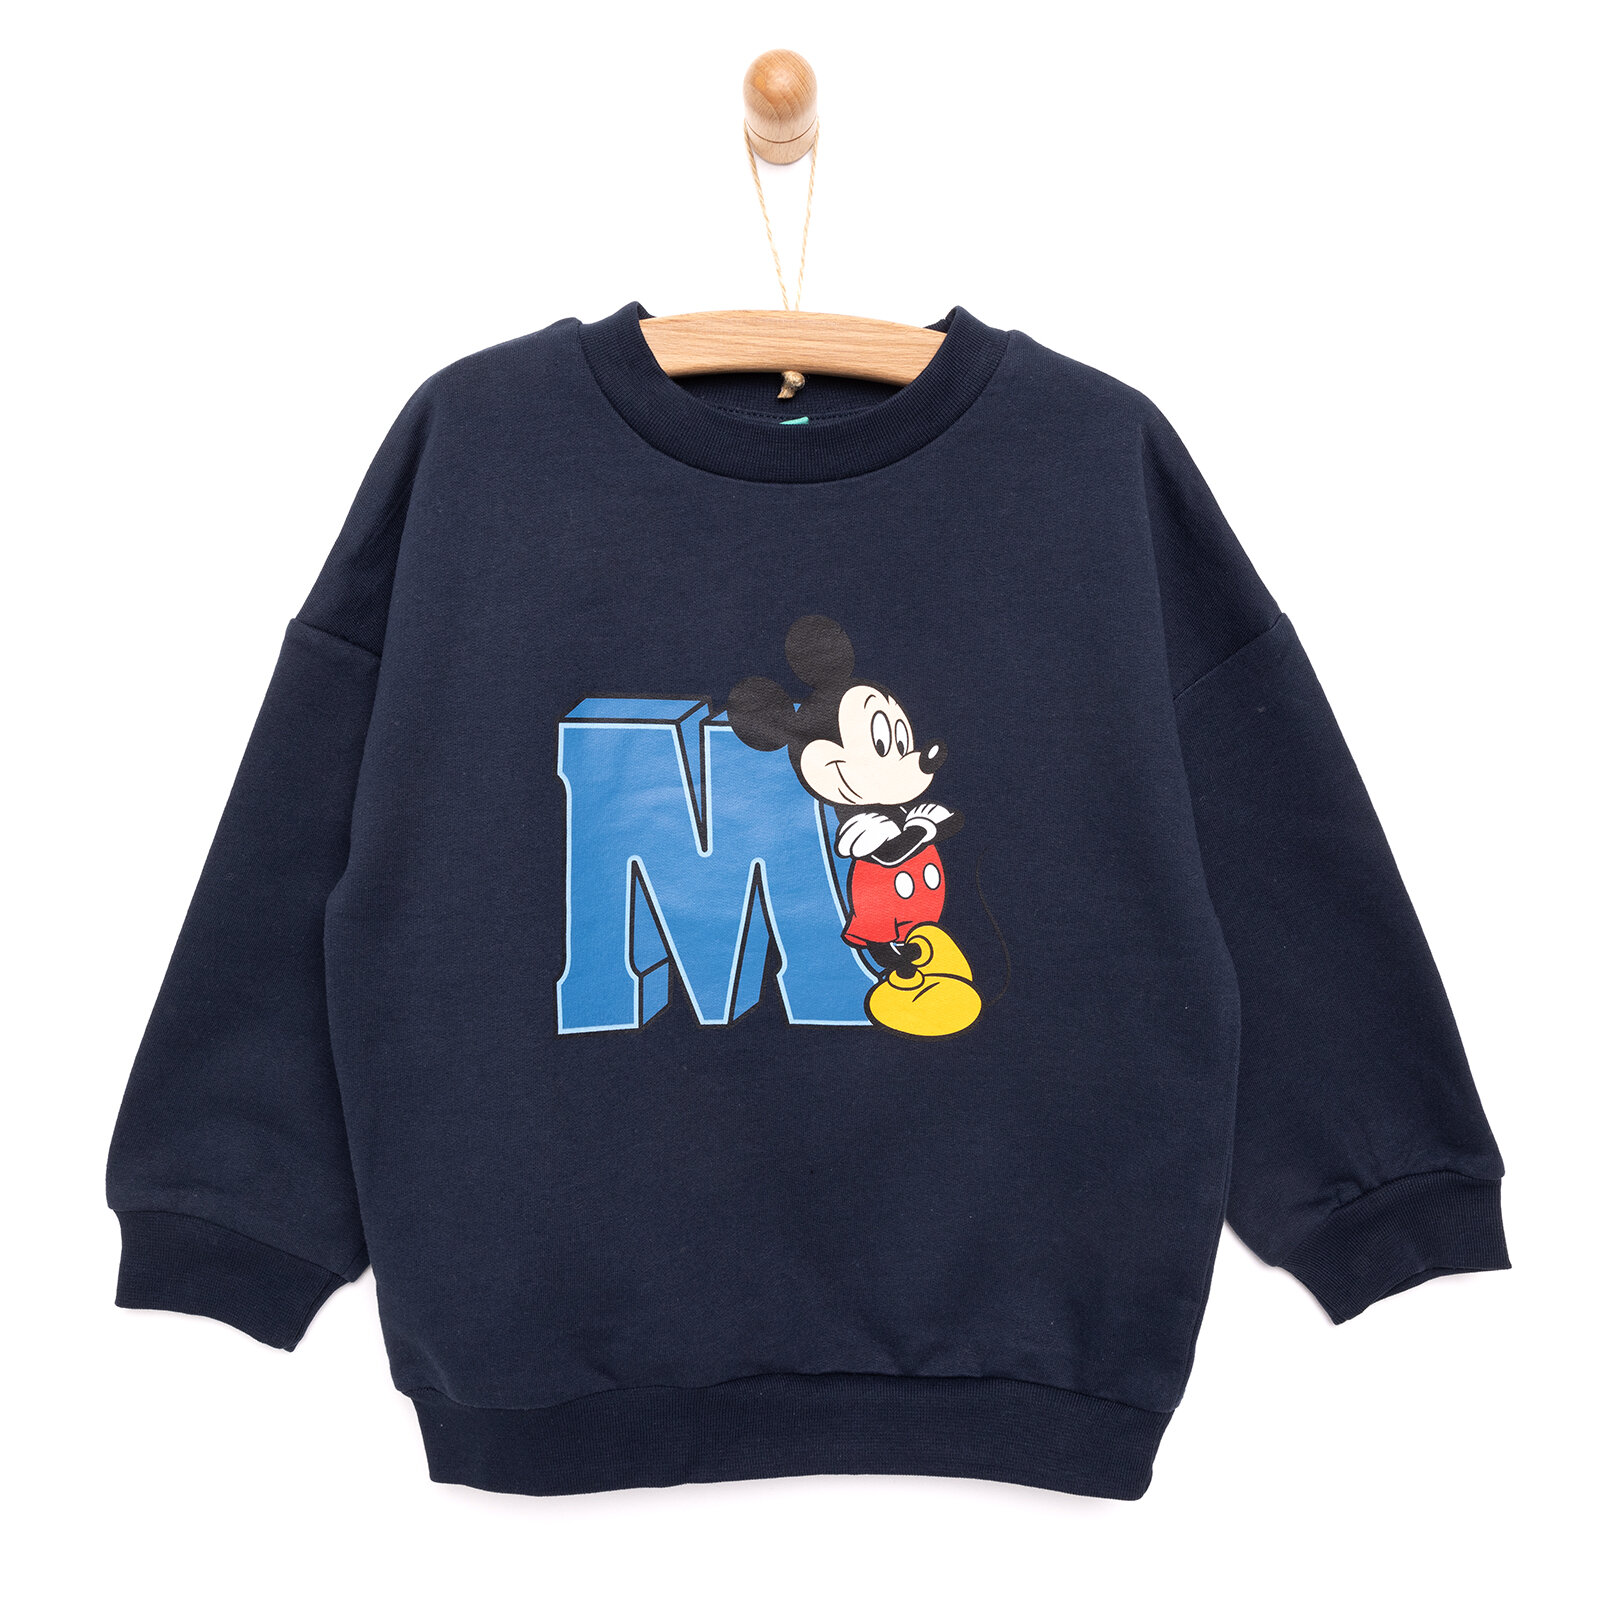 Lisans Disney Mickey Mouse Sweatshirt Erkek Bebek